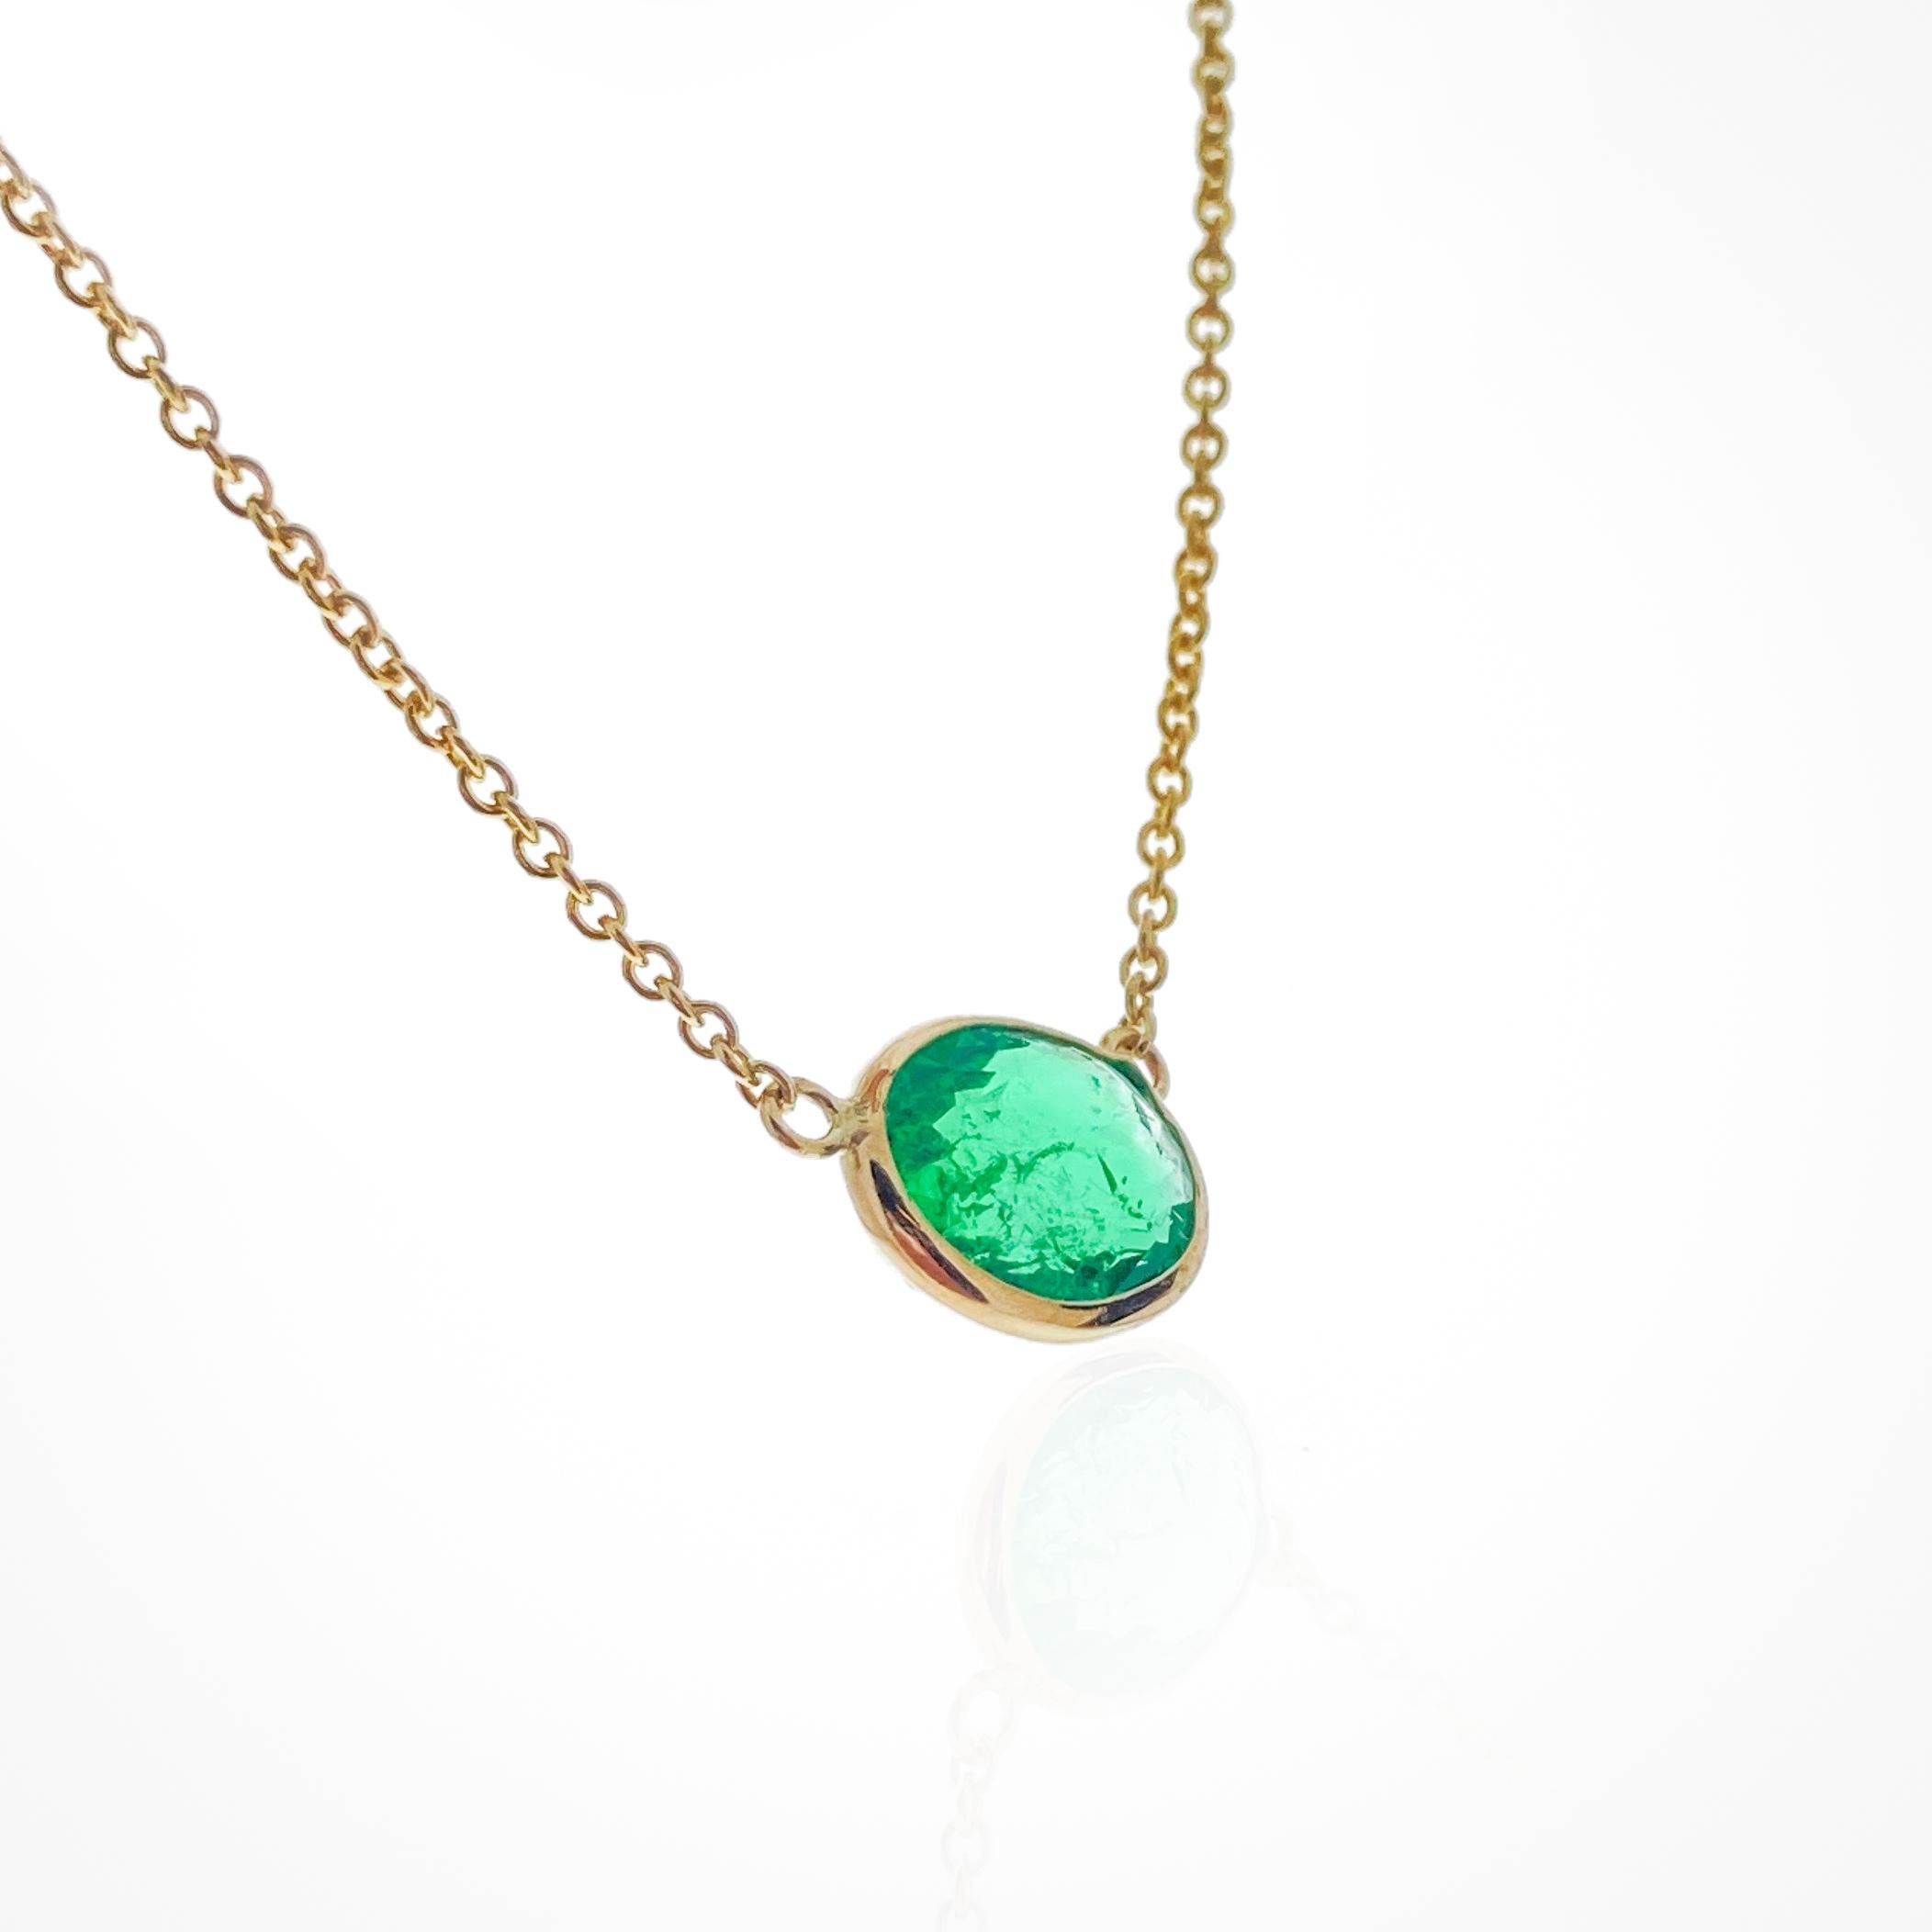 Dieses Collier enthält einen grünen Smaragd im Ovalschliff mit einem Gewicht von 1,96 Karat, gefasst in 14 Karat Gelbgold (YG). Smaragde werden wegen ihrer leuchtend grünen Farbe sehr geschätzt, und der ovale Schliff ist eine klassische und elegante